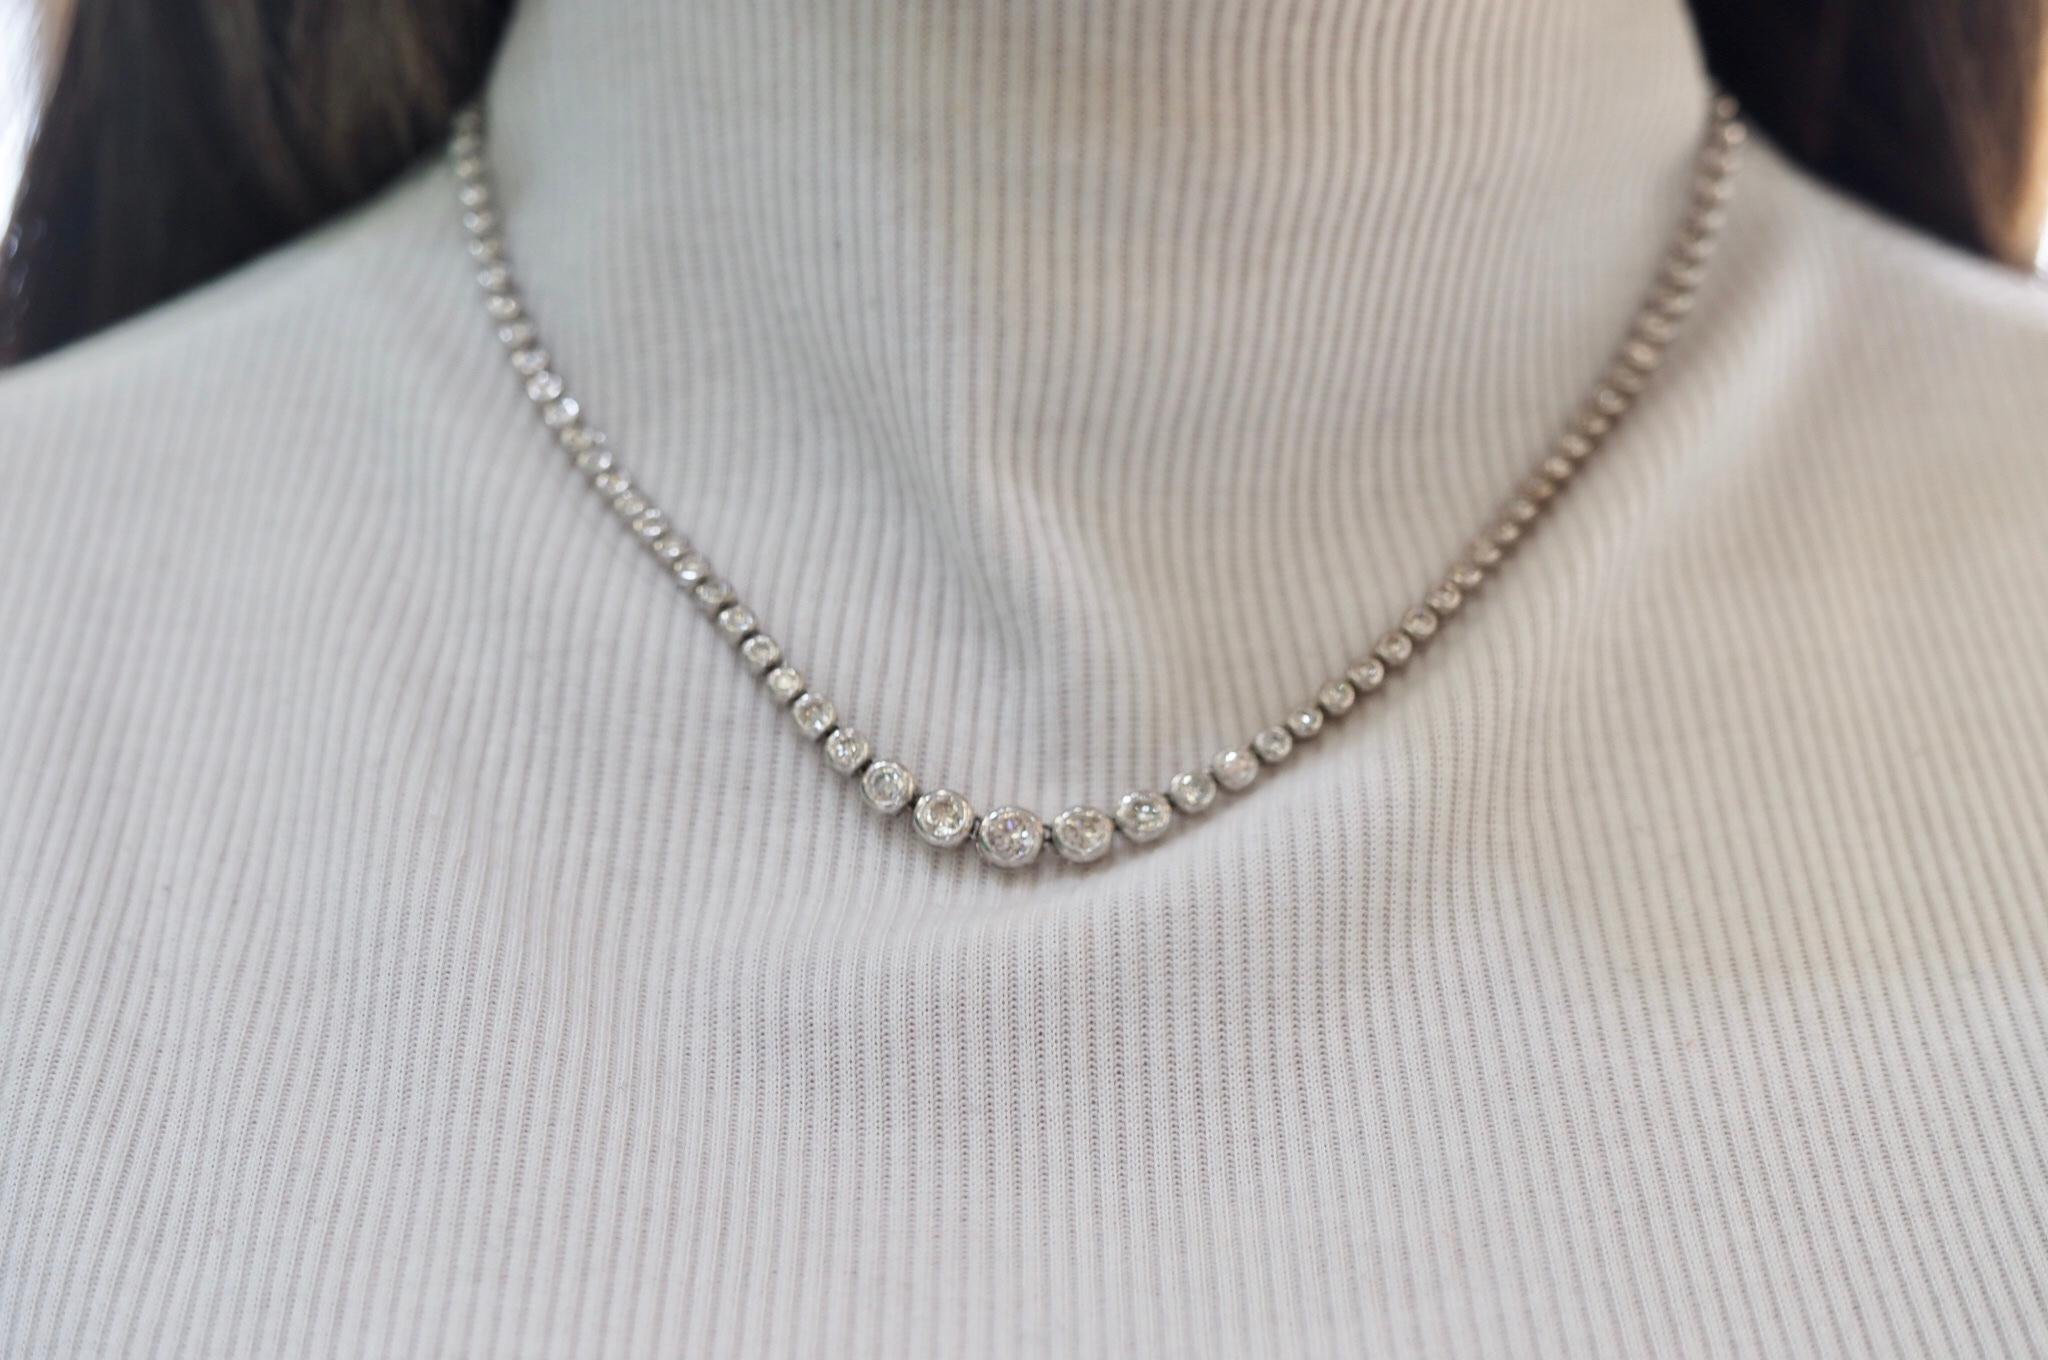 7 carat diamond necklace